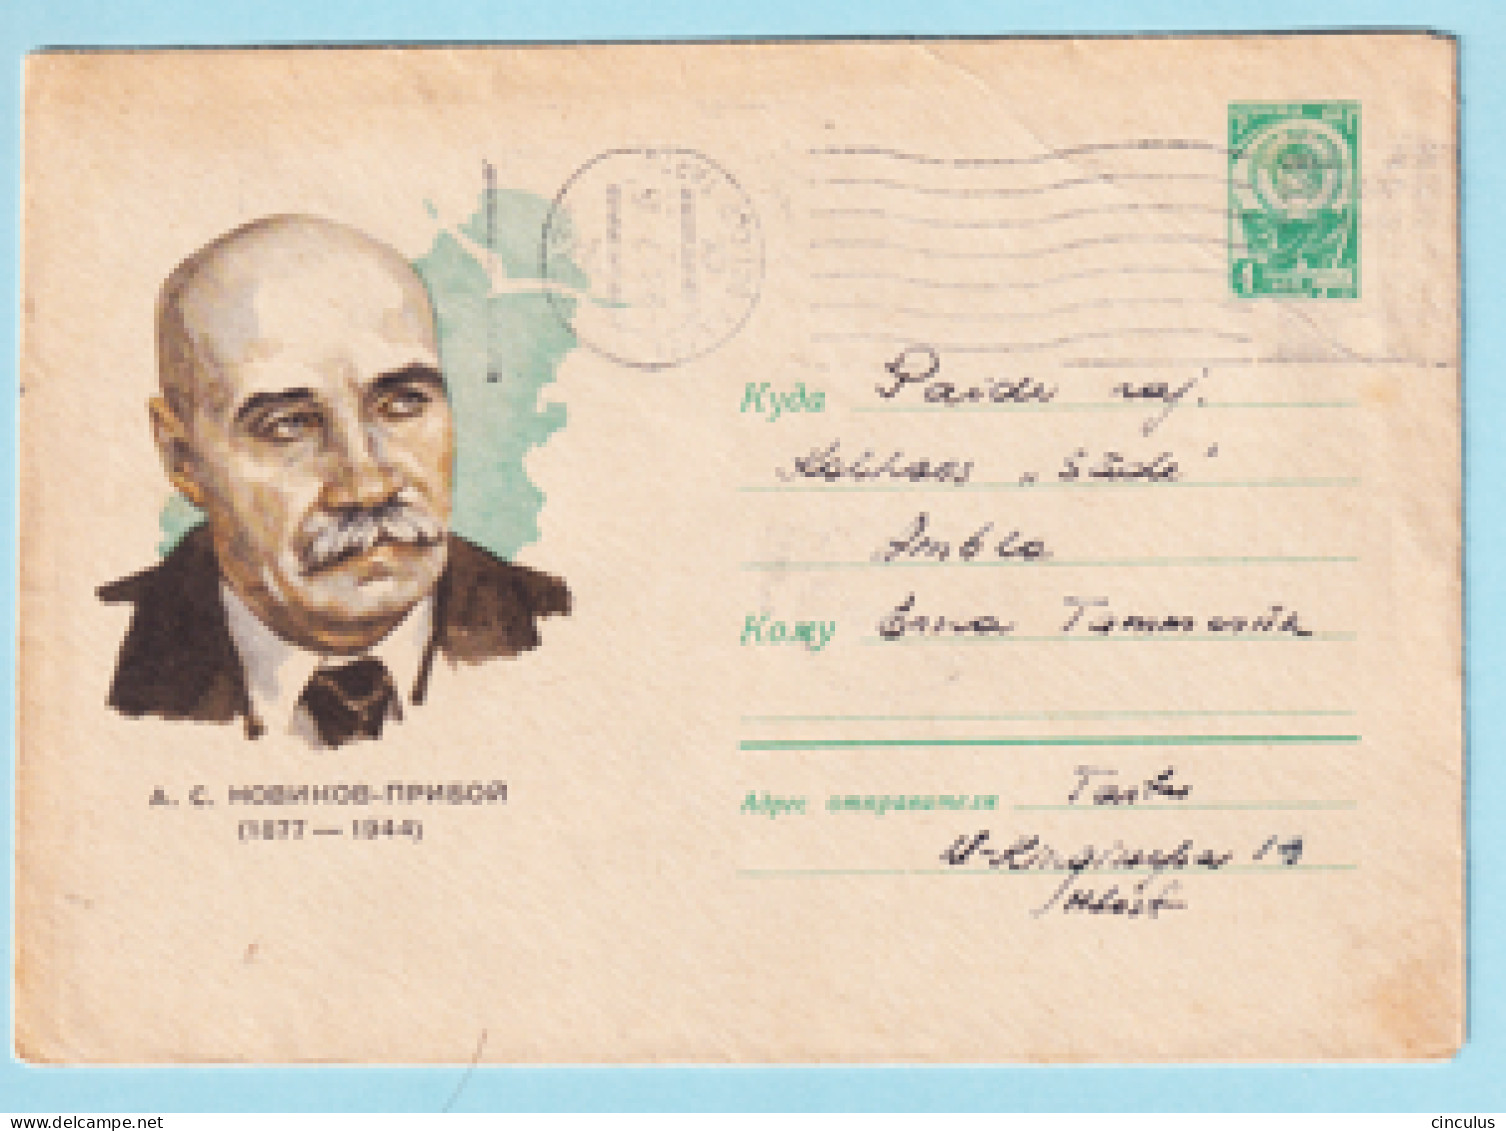 USSR 1967.00. A.Novikov-Priboy (1877-1944), Writer. Prestamped Cover, Used - 1960-69